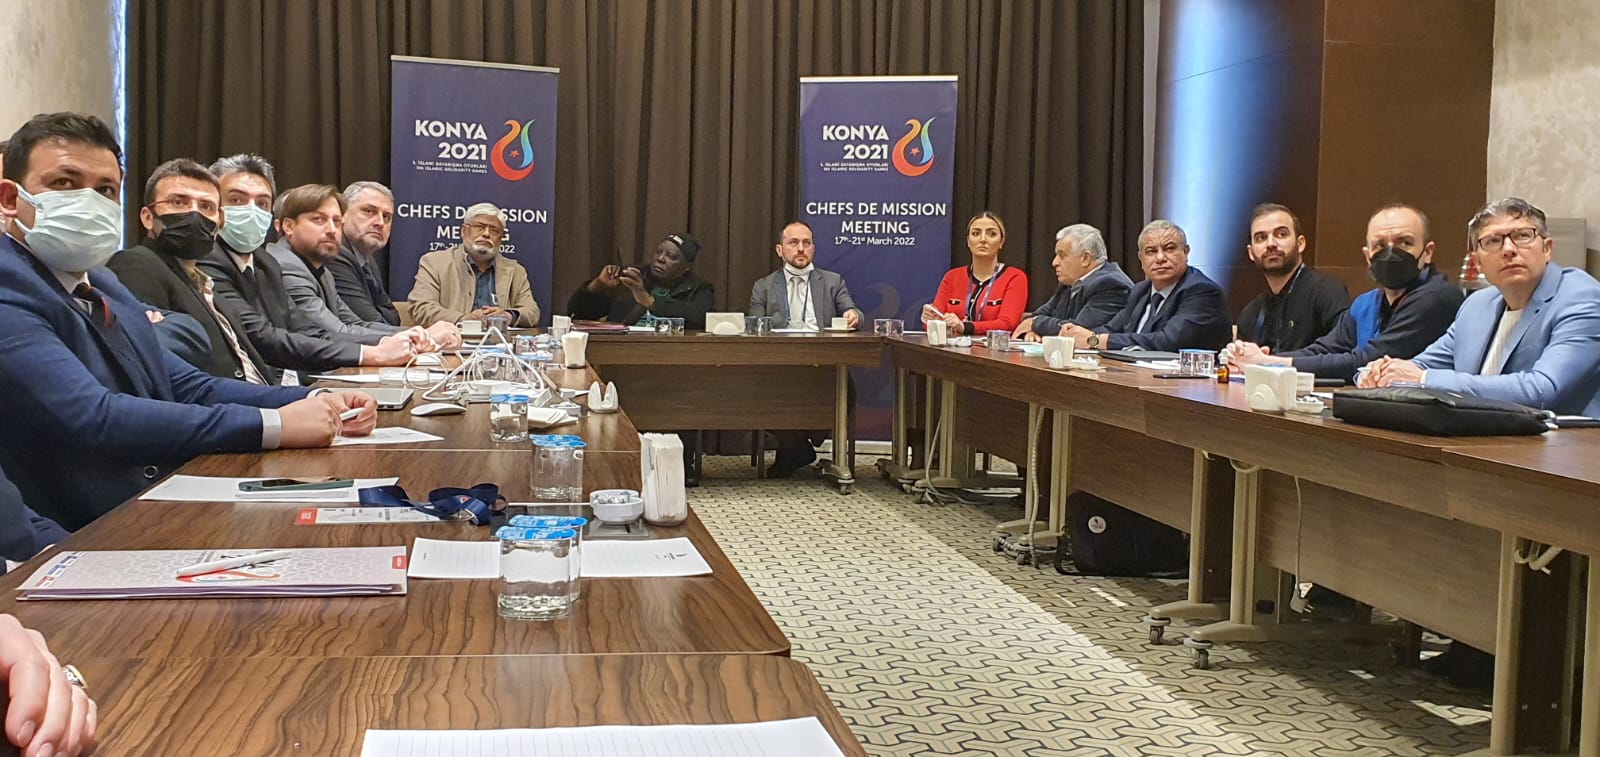 La Commission de Supervision et de Coordination rencontre le Comité d’Organisation de Konya 2021